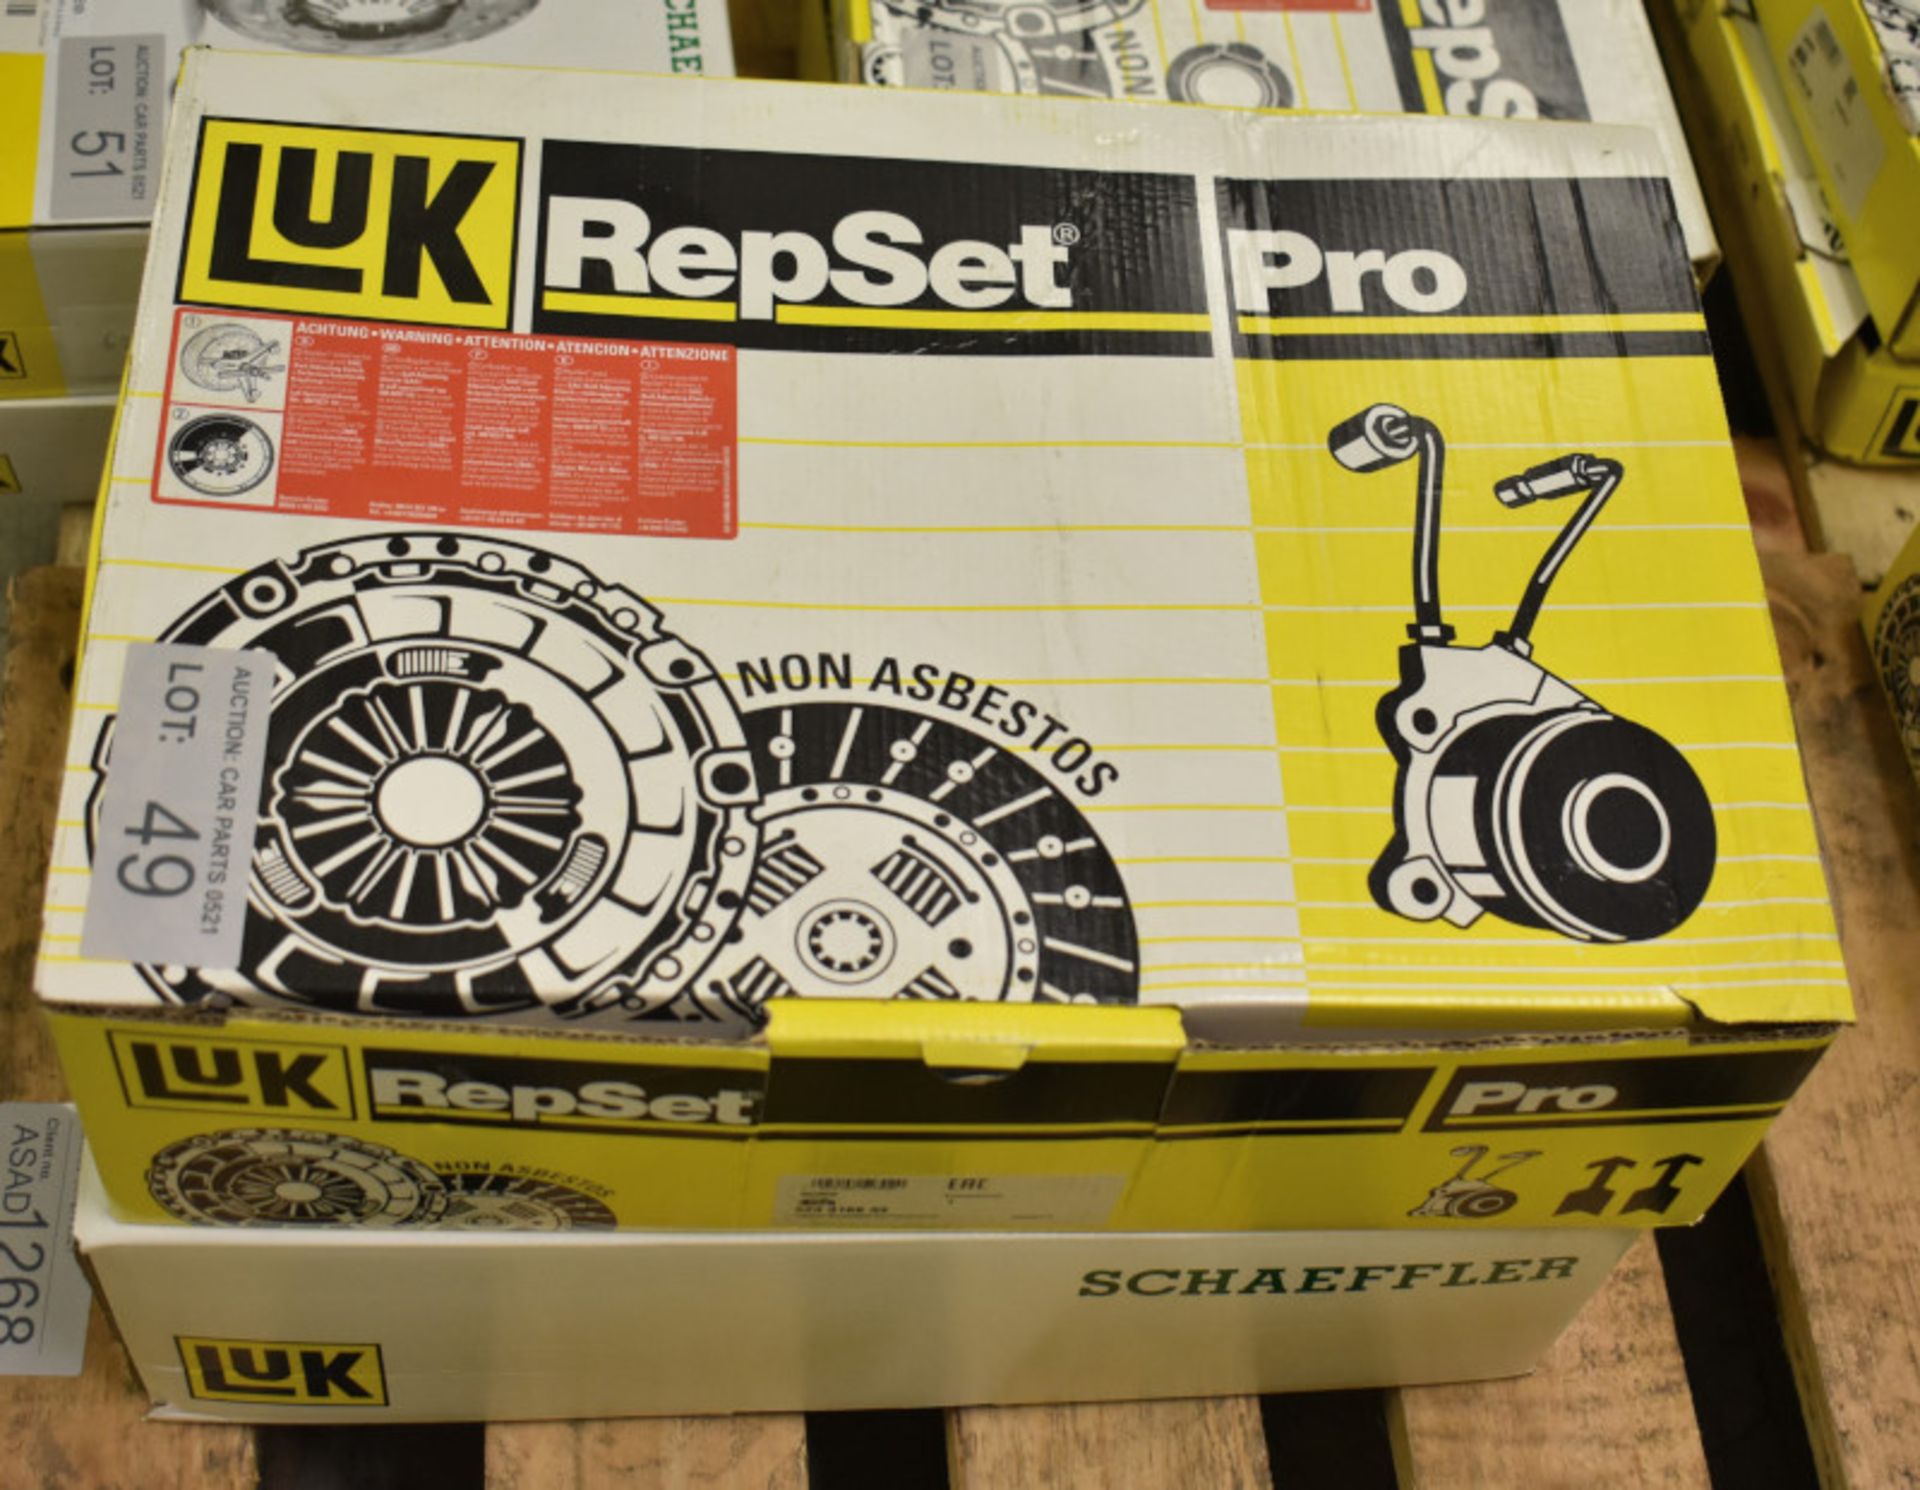 2x LUK Repset Pro Clutch Kits (1x Schaeffler) - Models - 623 3169 33 & 623 3145 34